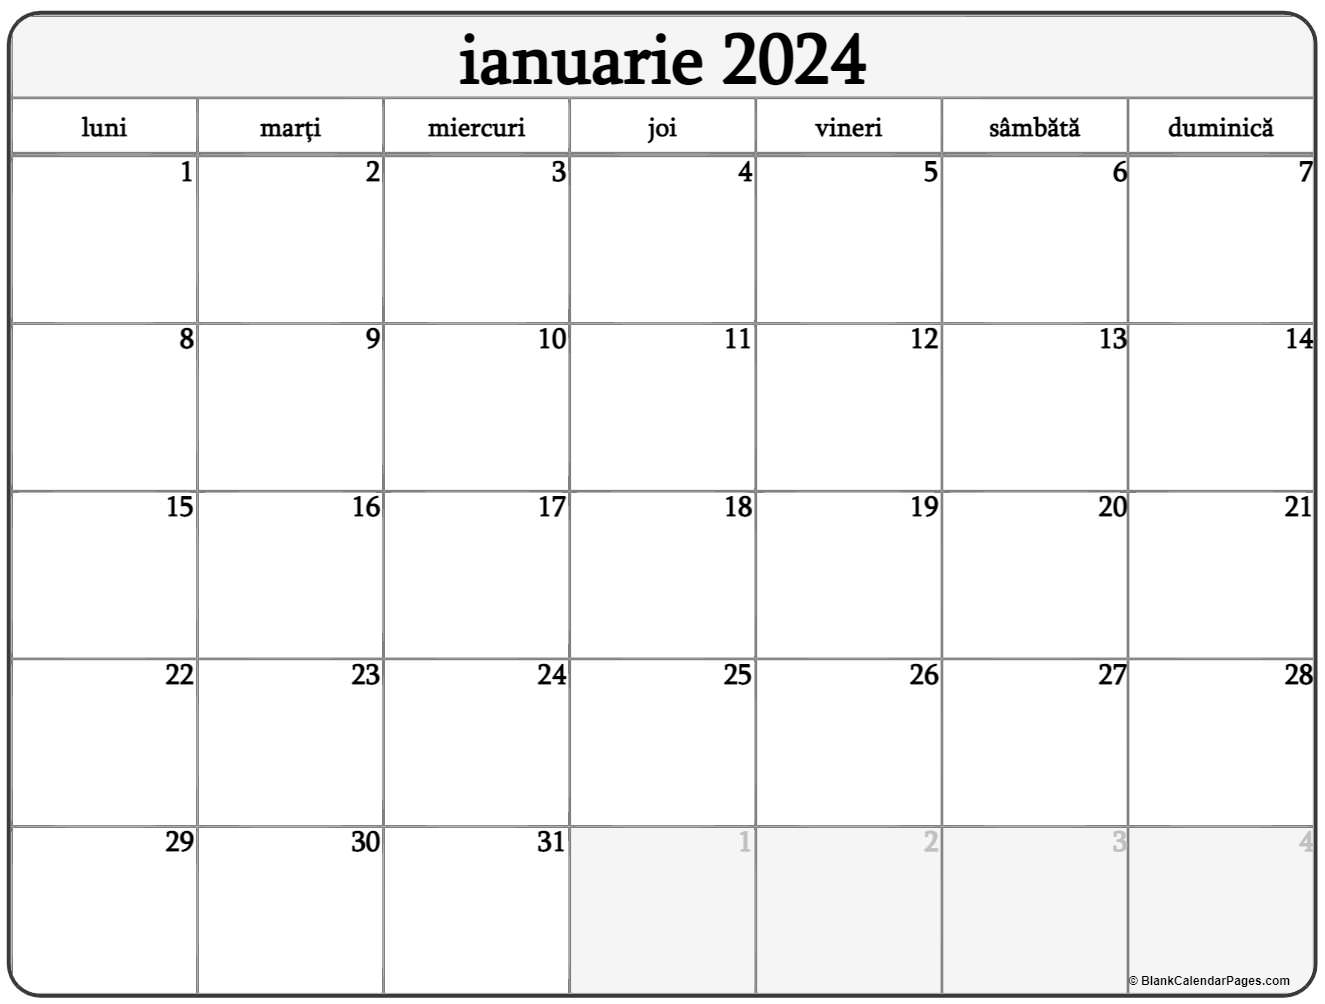 Calendarul ianuarie 2024 imprimabil gratuit in romana